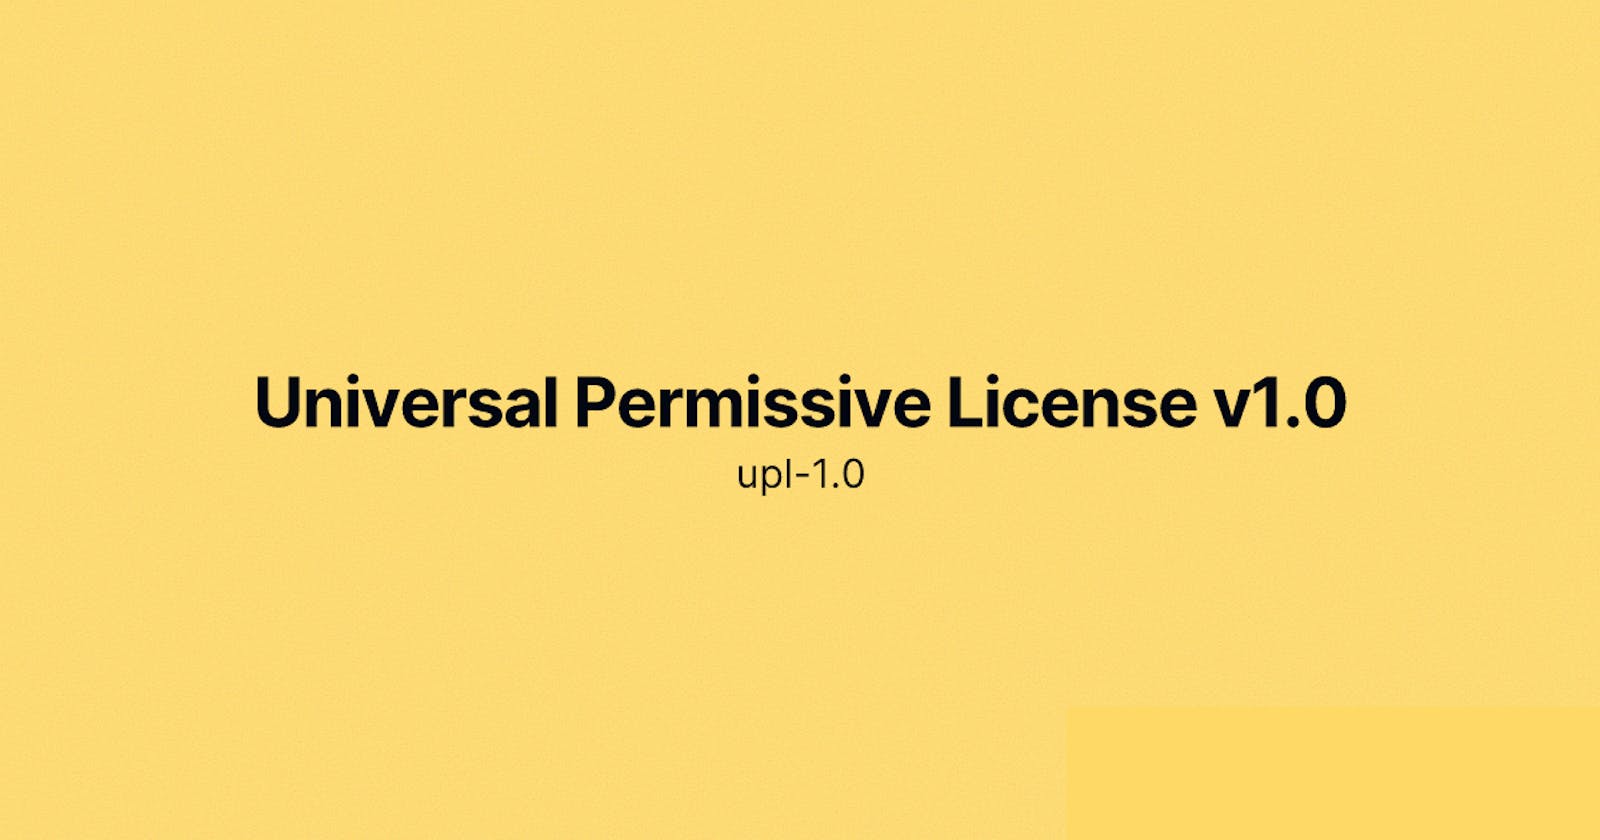 Universal Permissive License v1.0